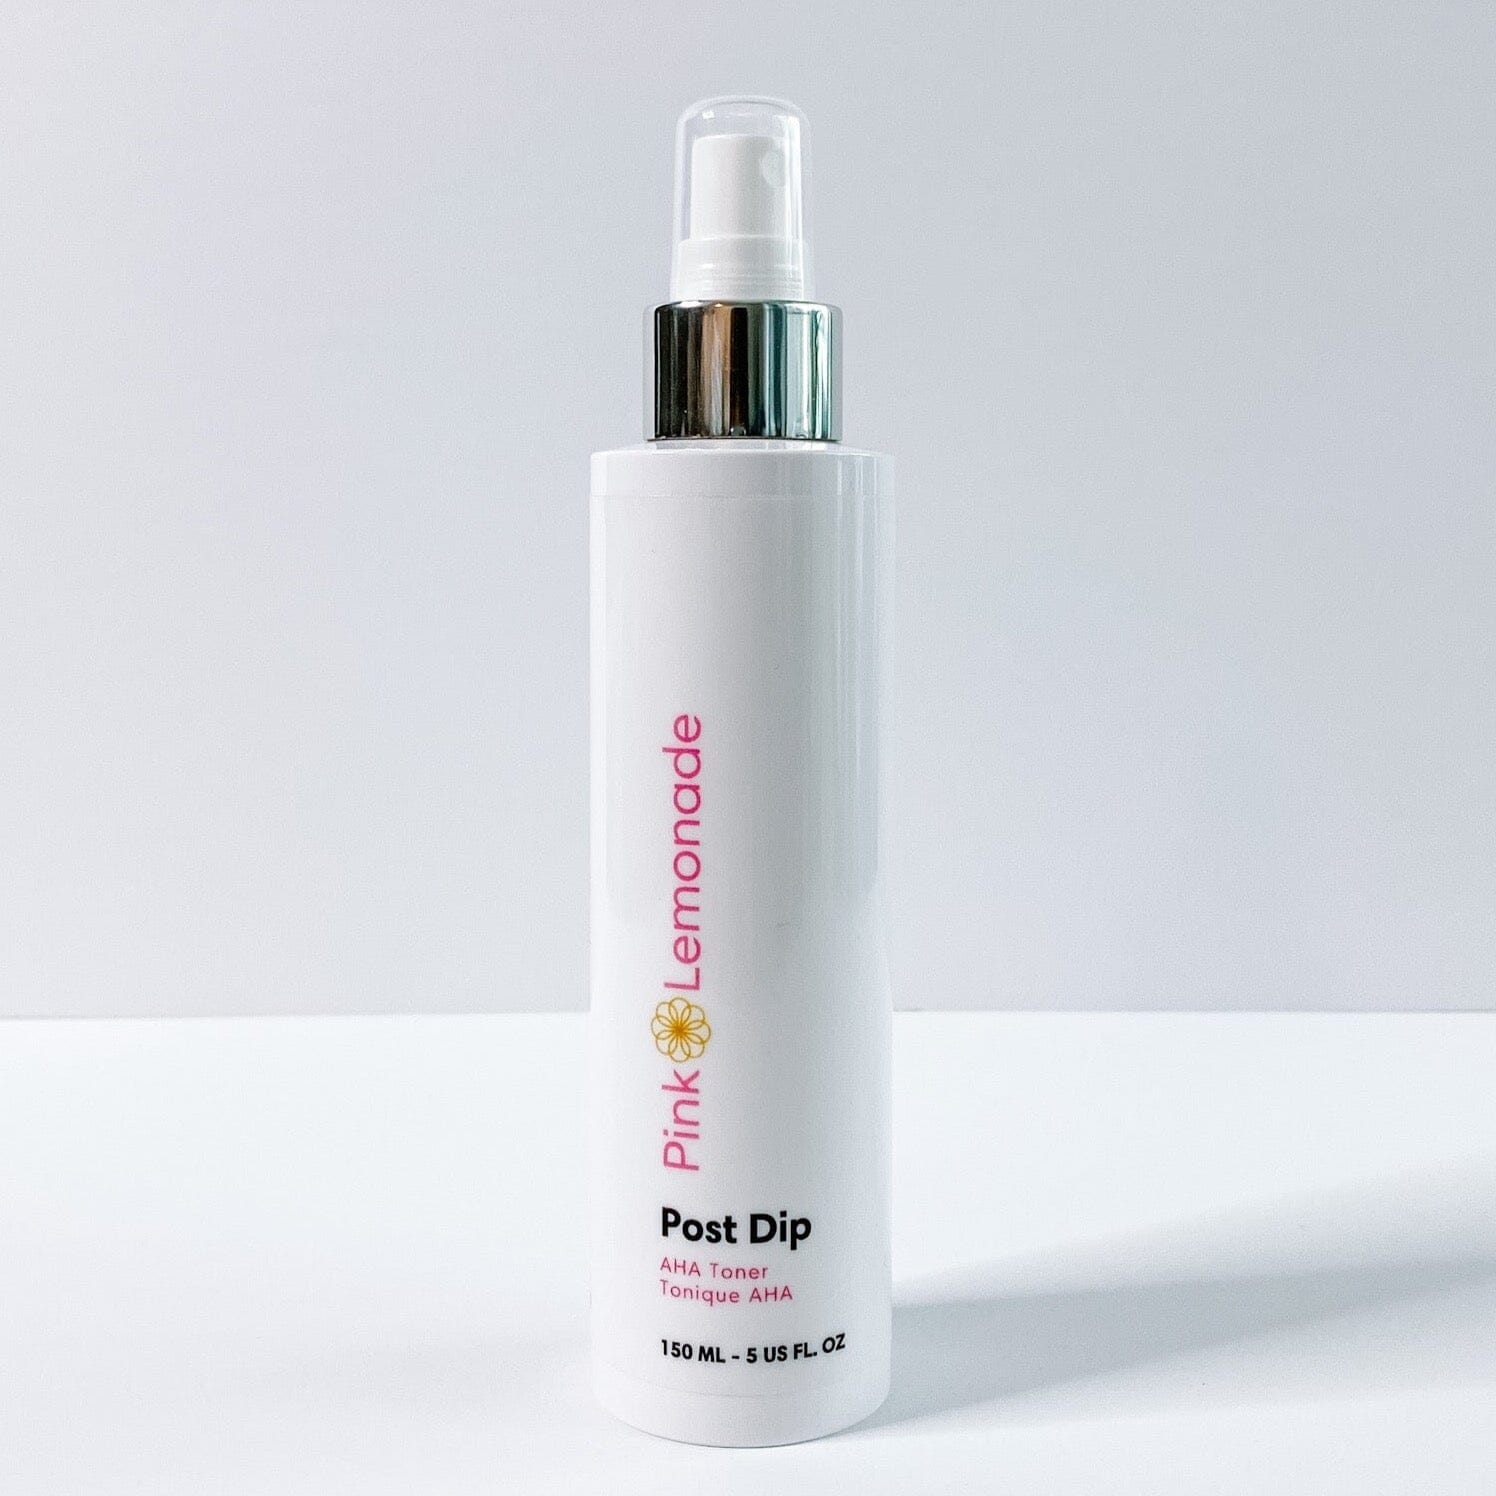 Post Dip AHA Toner Beauty & Health - Skin Care Pink Lemonade Skincare 